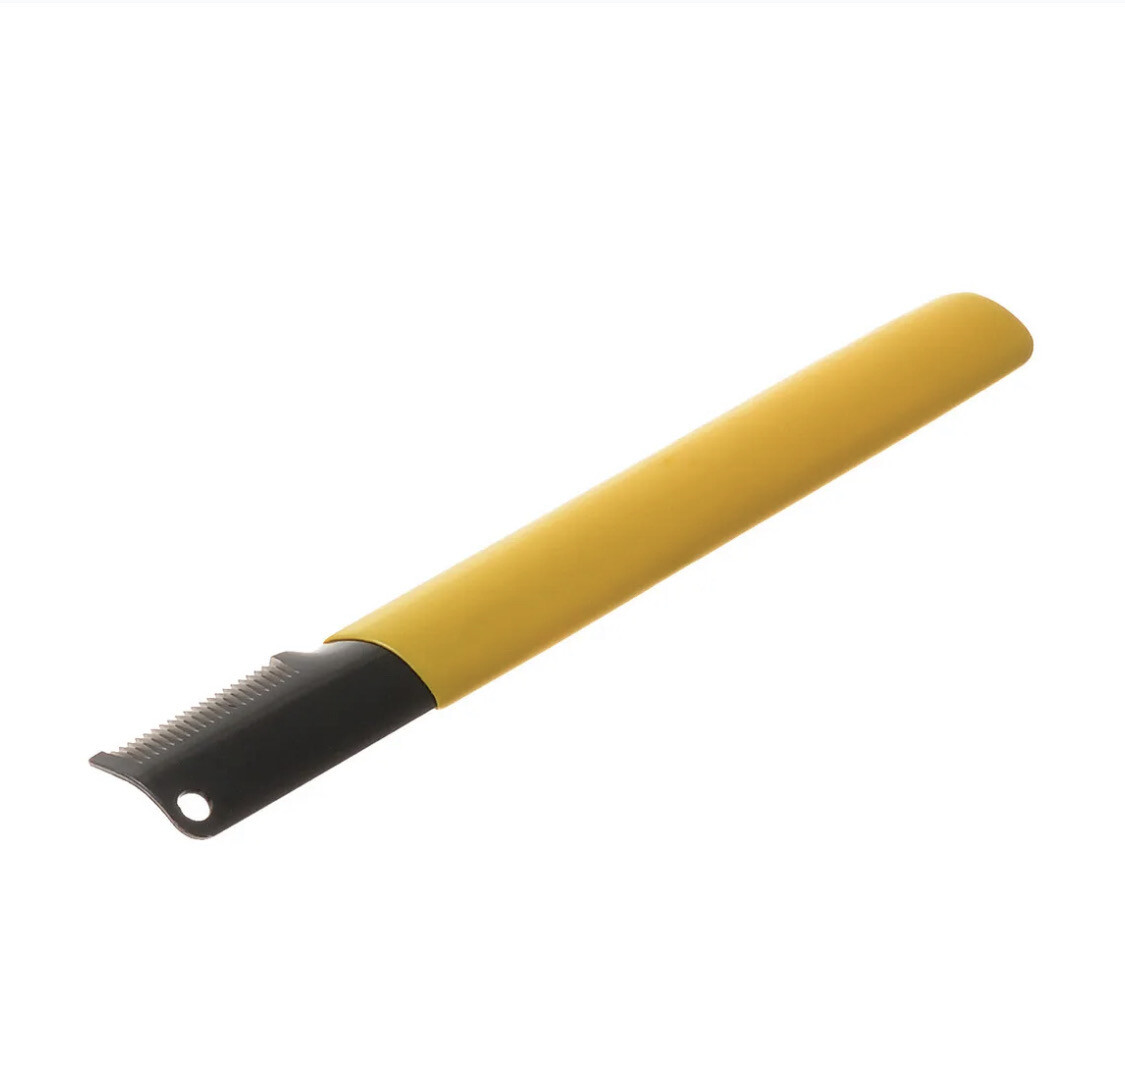 Нож для тримминга желтый